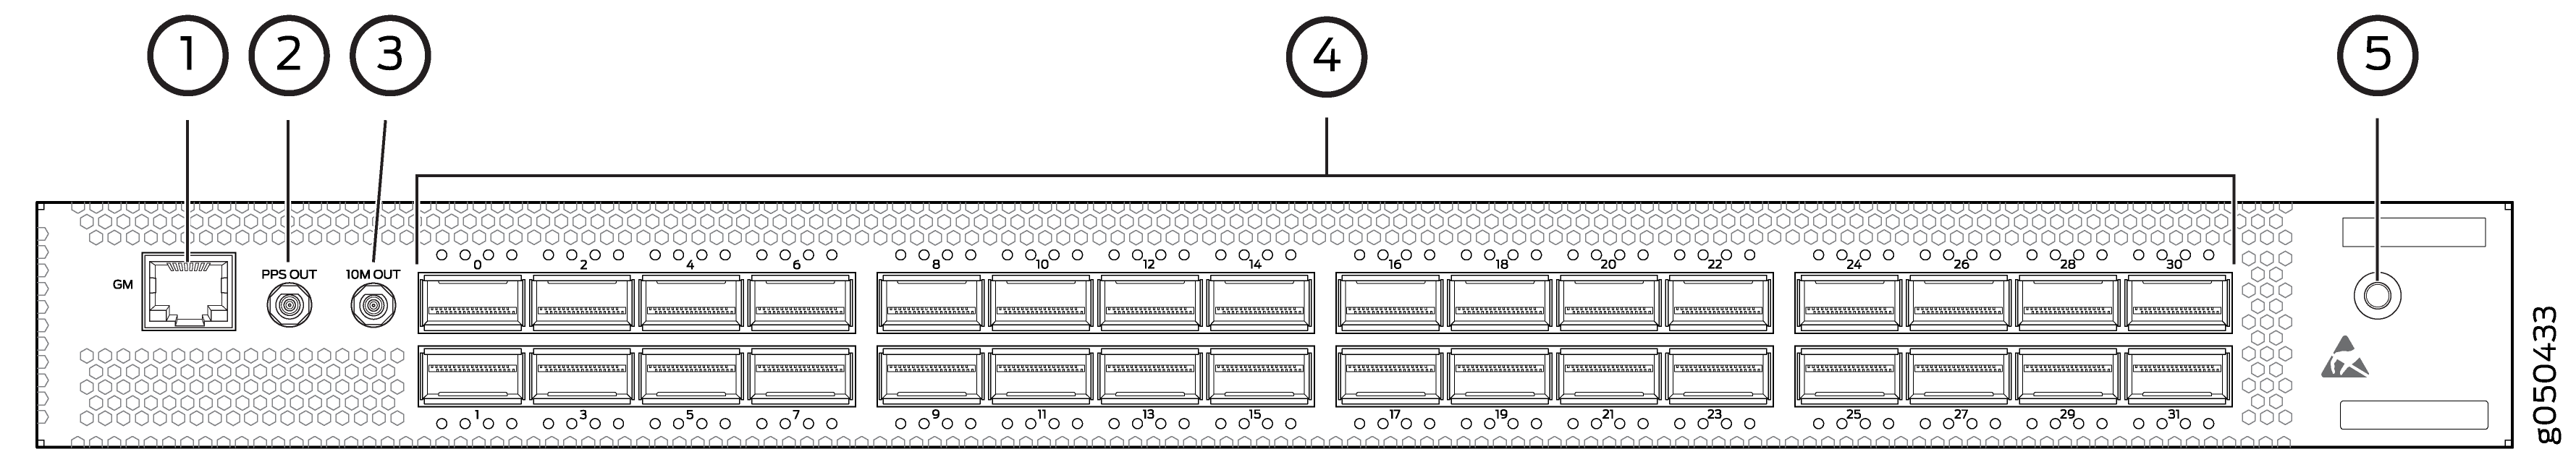 QFX5200-32C and QFX5200-32C-L Port Panel